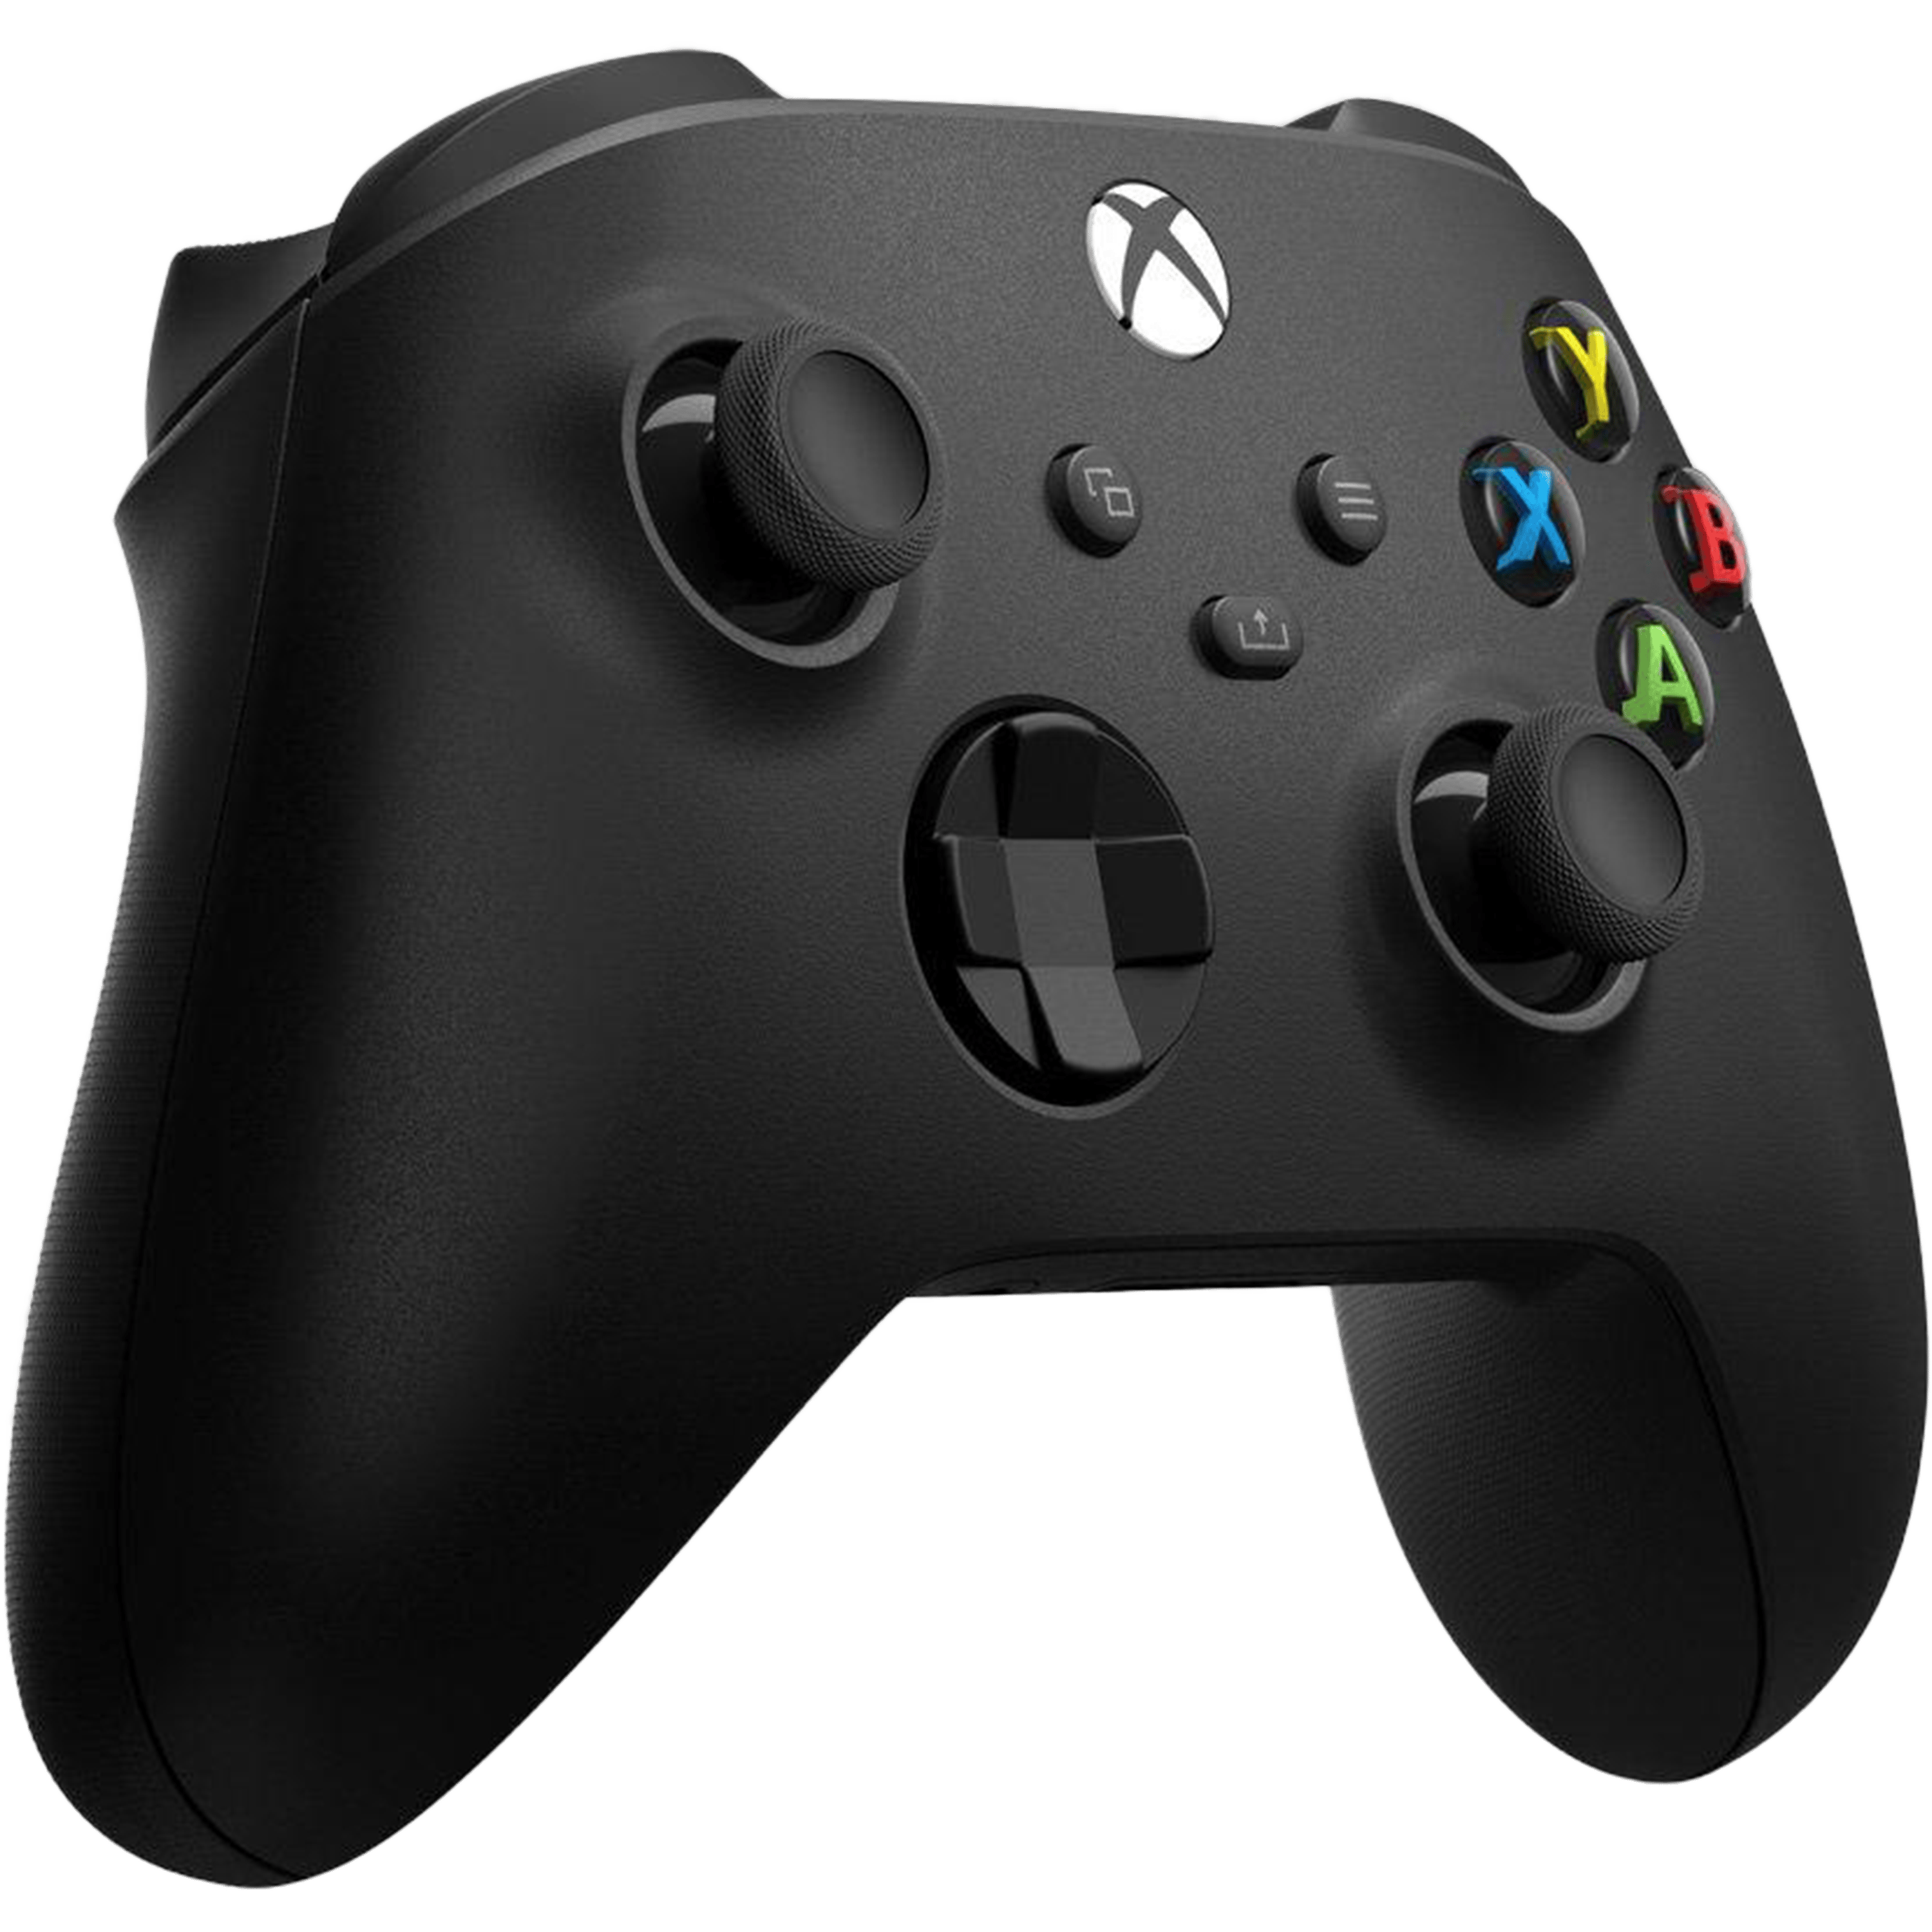 קונסולה Xbox Series X 1TB - צבע שחור שנתיים אחריות ע